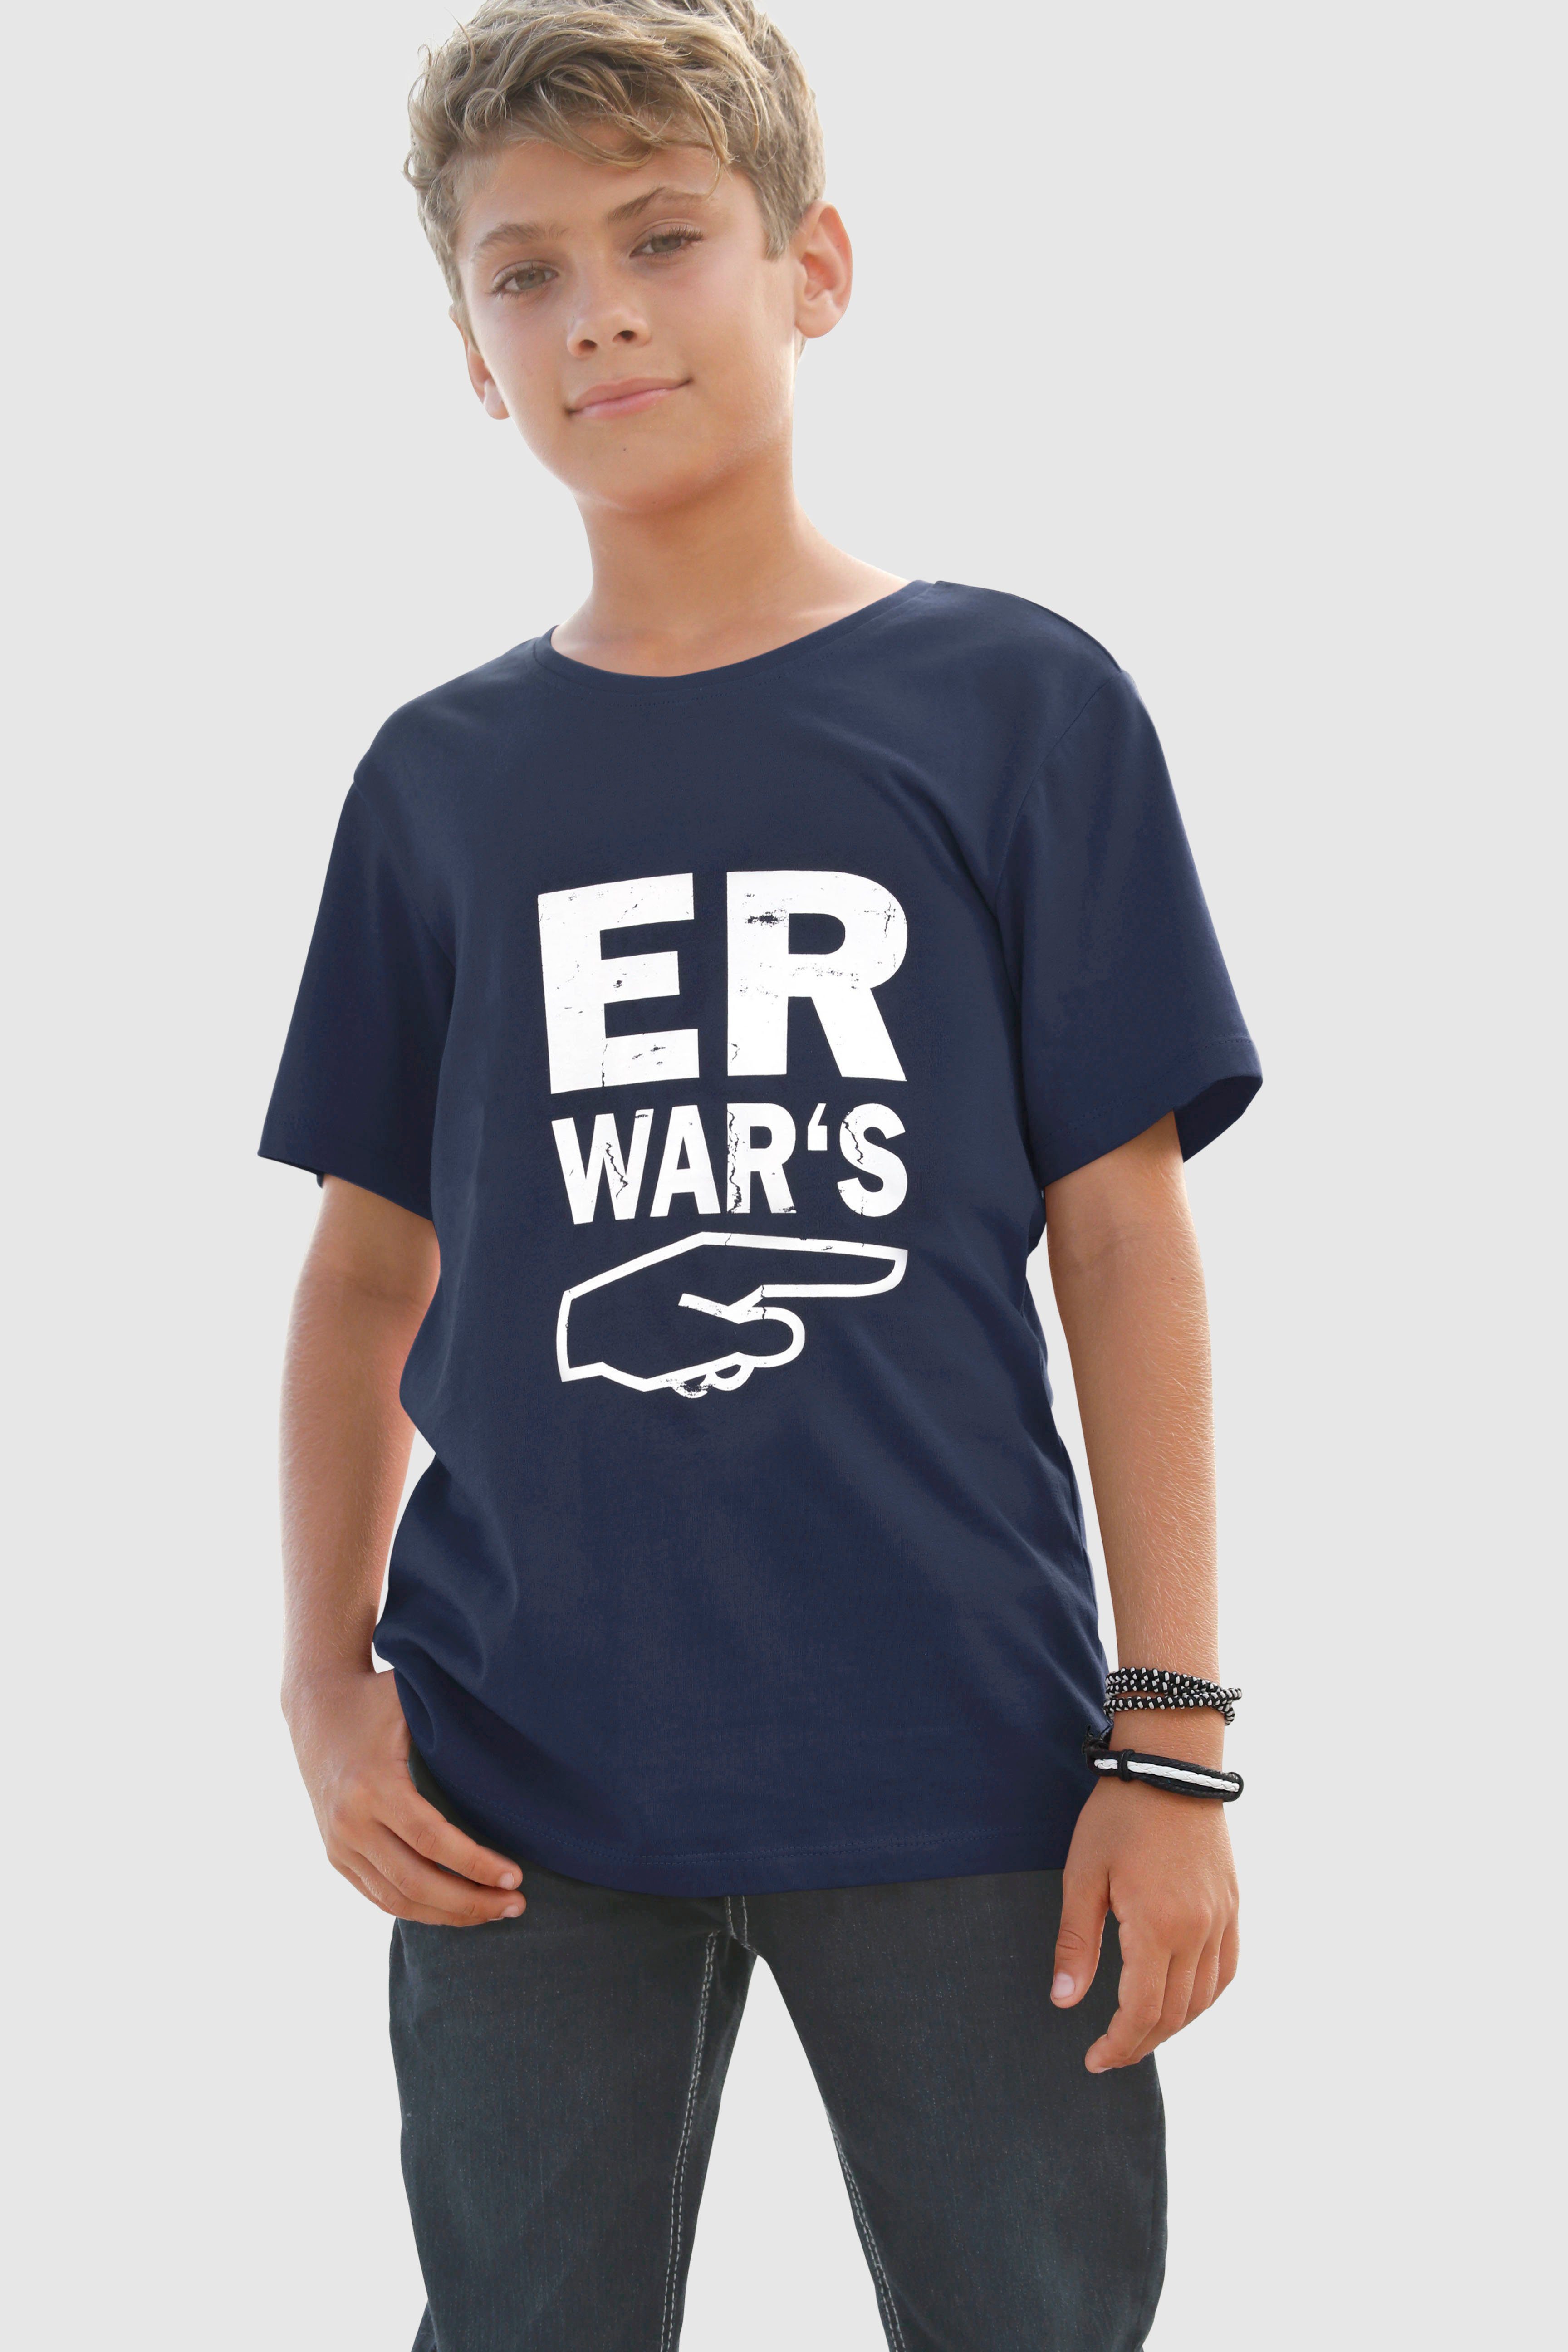 Spruch T-Shirt WAR`S, ER KIDSWORLD